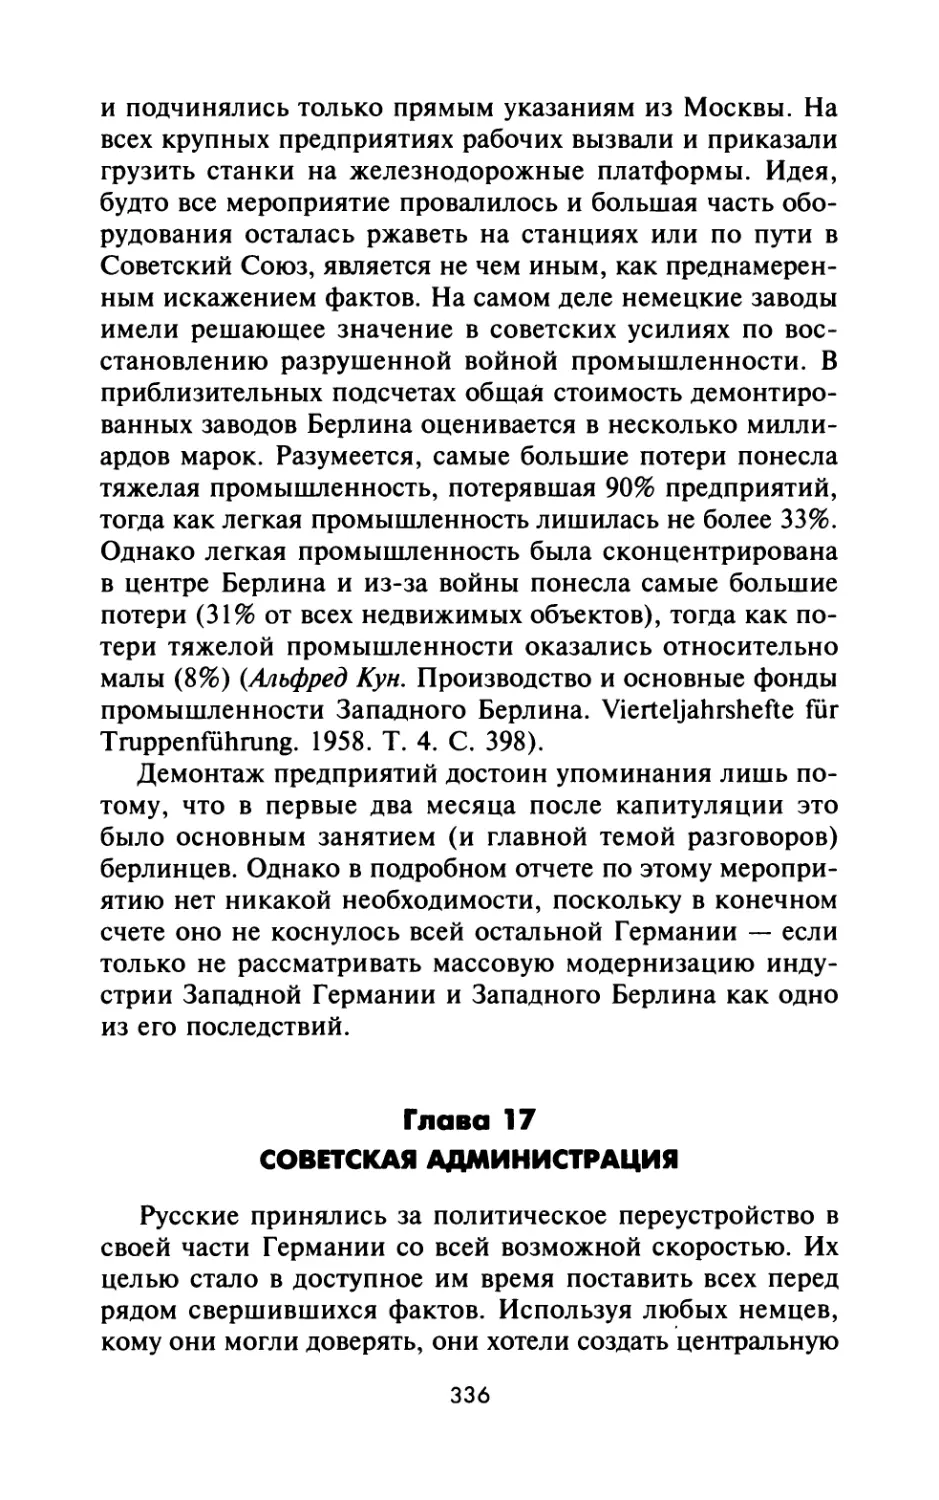 Глава 17. Советская администрация